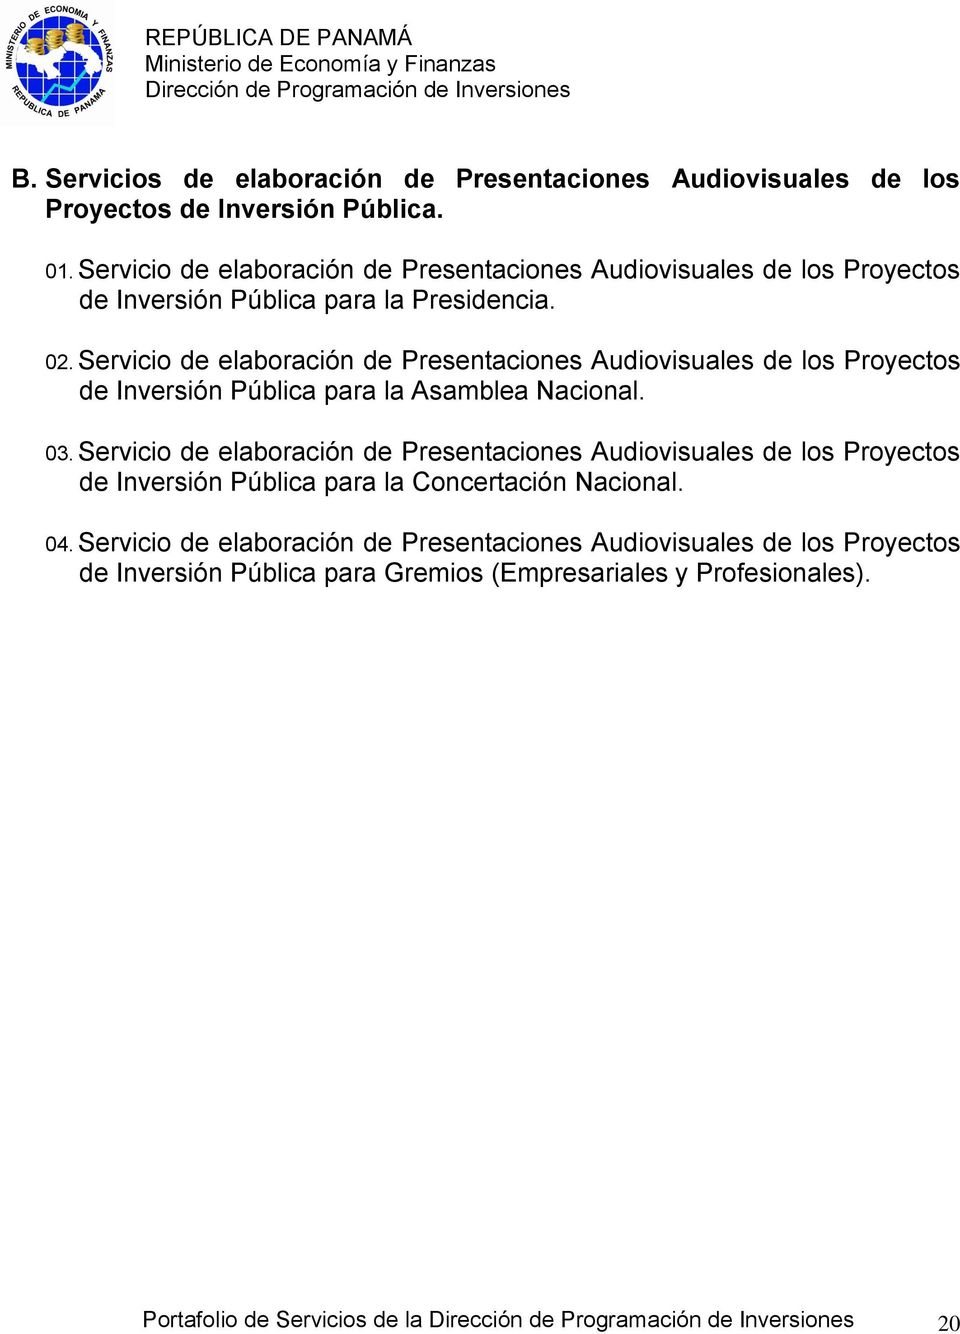 Servicio de elaboración de Presentaciones Audiovisuales de los Proyectos de Inversión Pública para la Asamblea Nacional. 03.